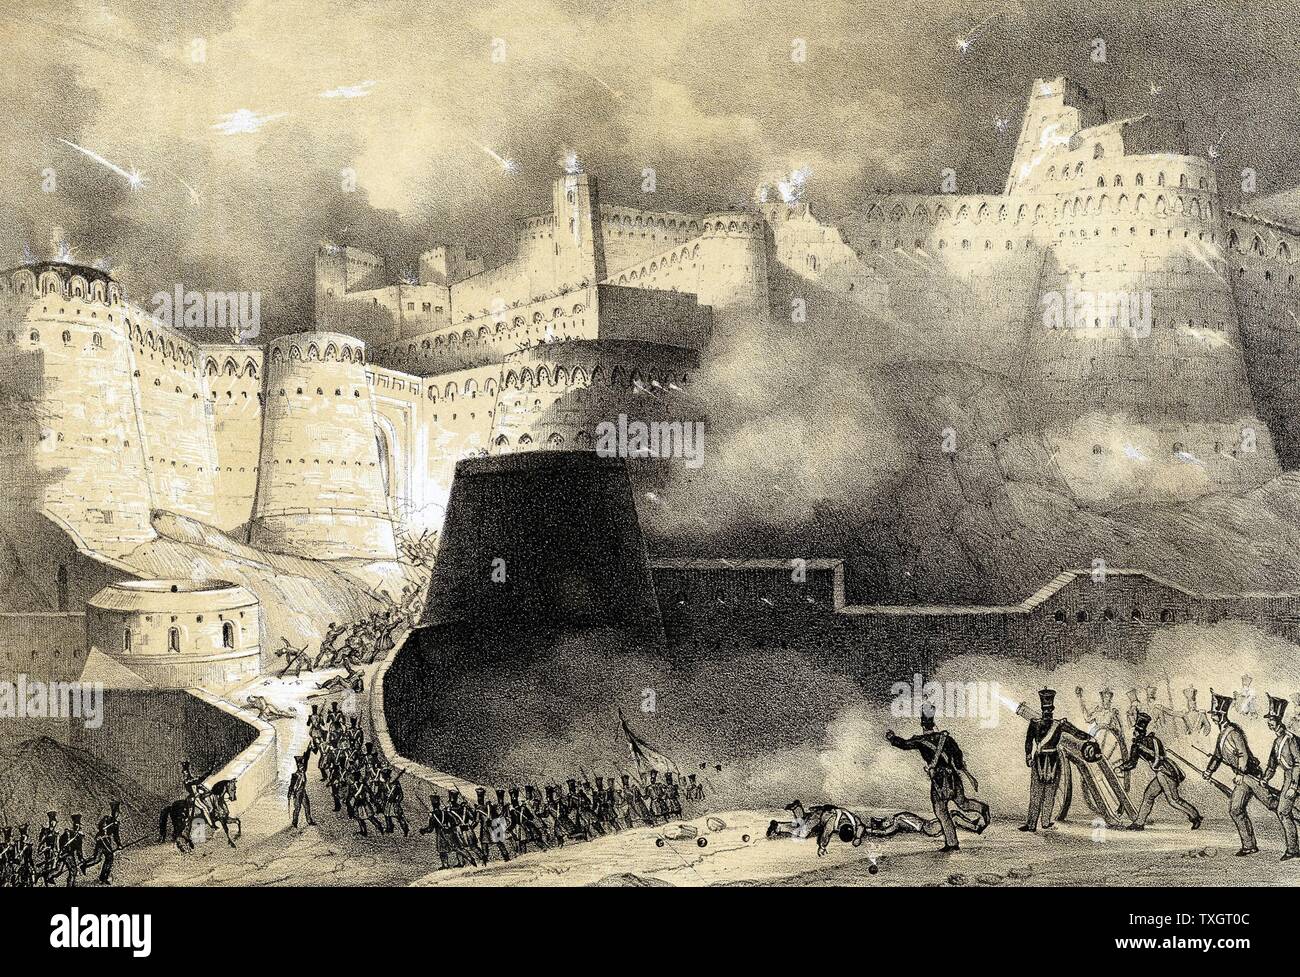 Zweite Anglo-Afghan Krieg 1878-1880: Erfassung von Ghunzee durch britische Truppen im März 1880 Lithographie getönt Stockfoto